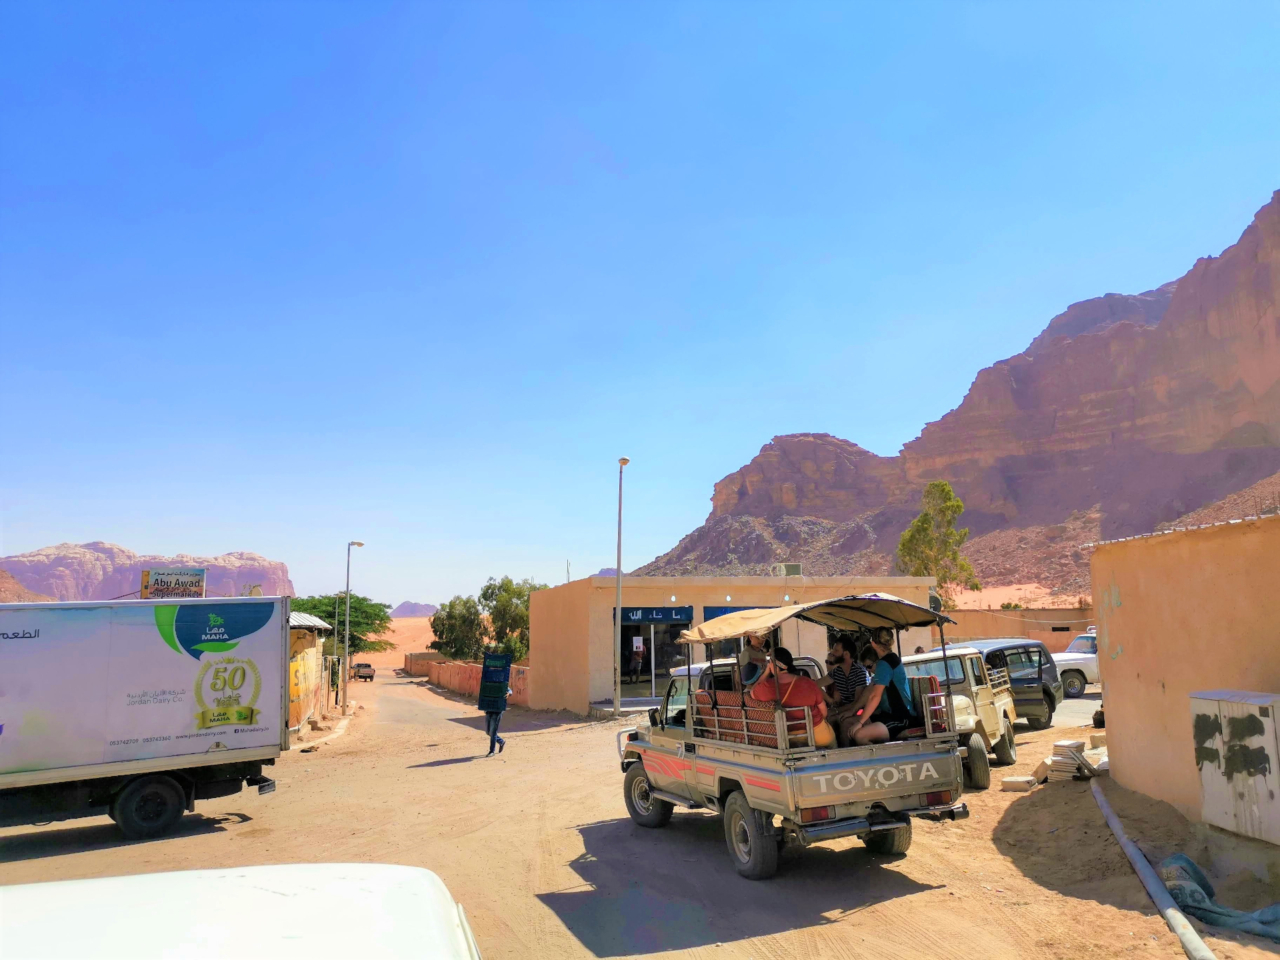 Desert Wadi Rum Jordan 2019